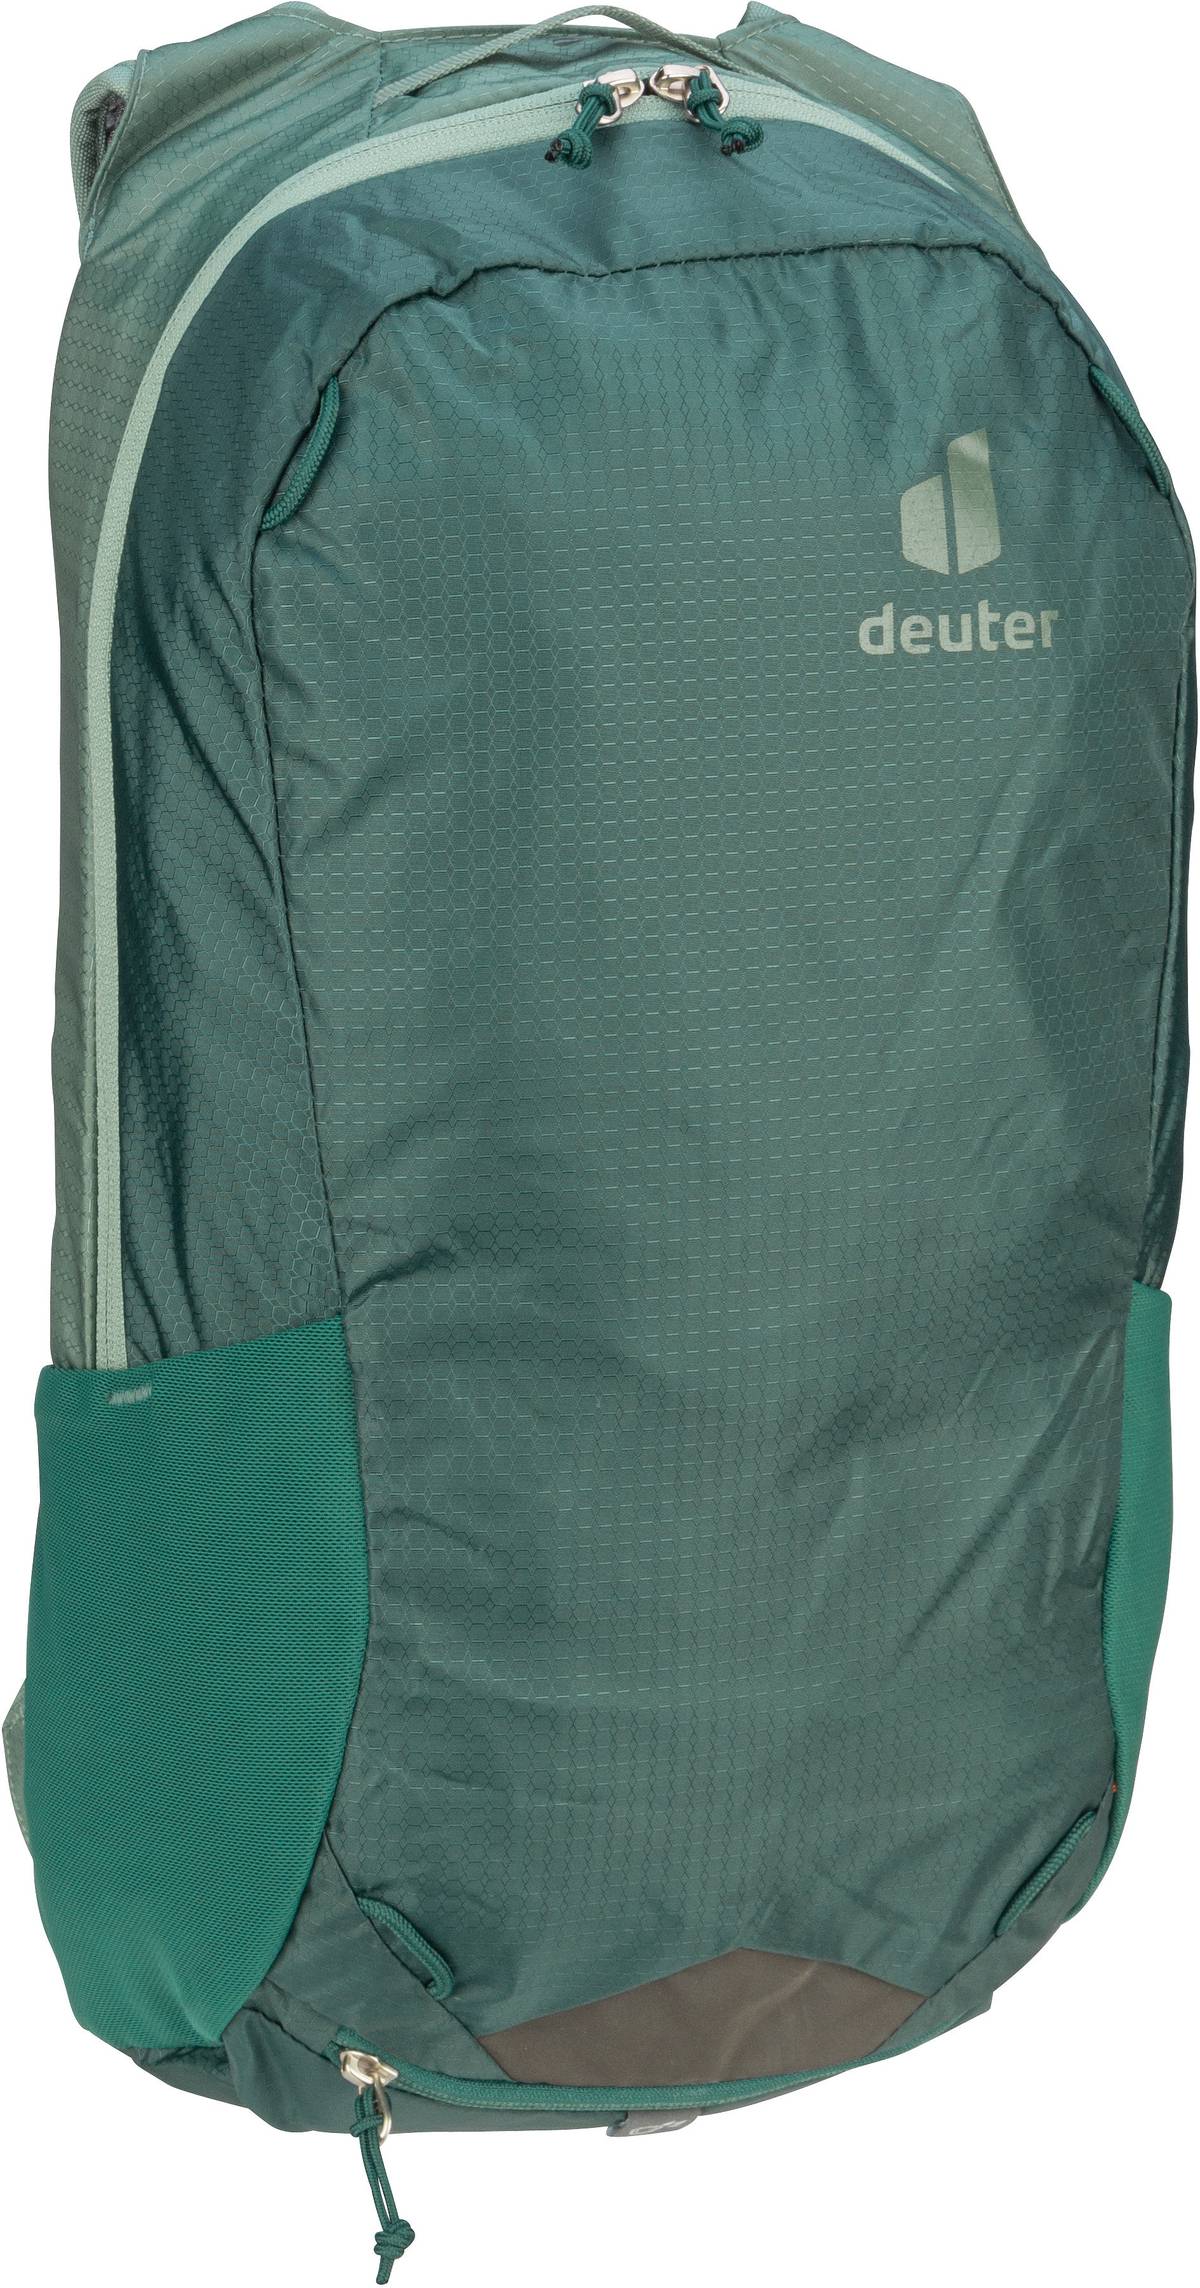 Deuter Deuter Race 16 in Türkis (16 Liter), Rucksack / Backpack